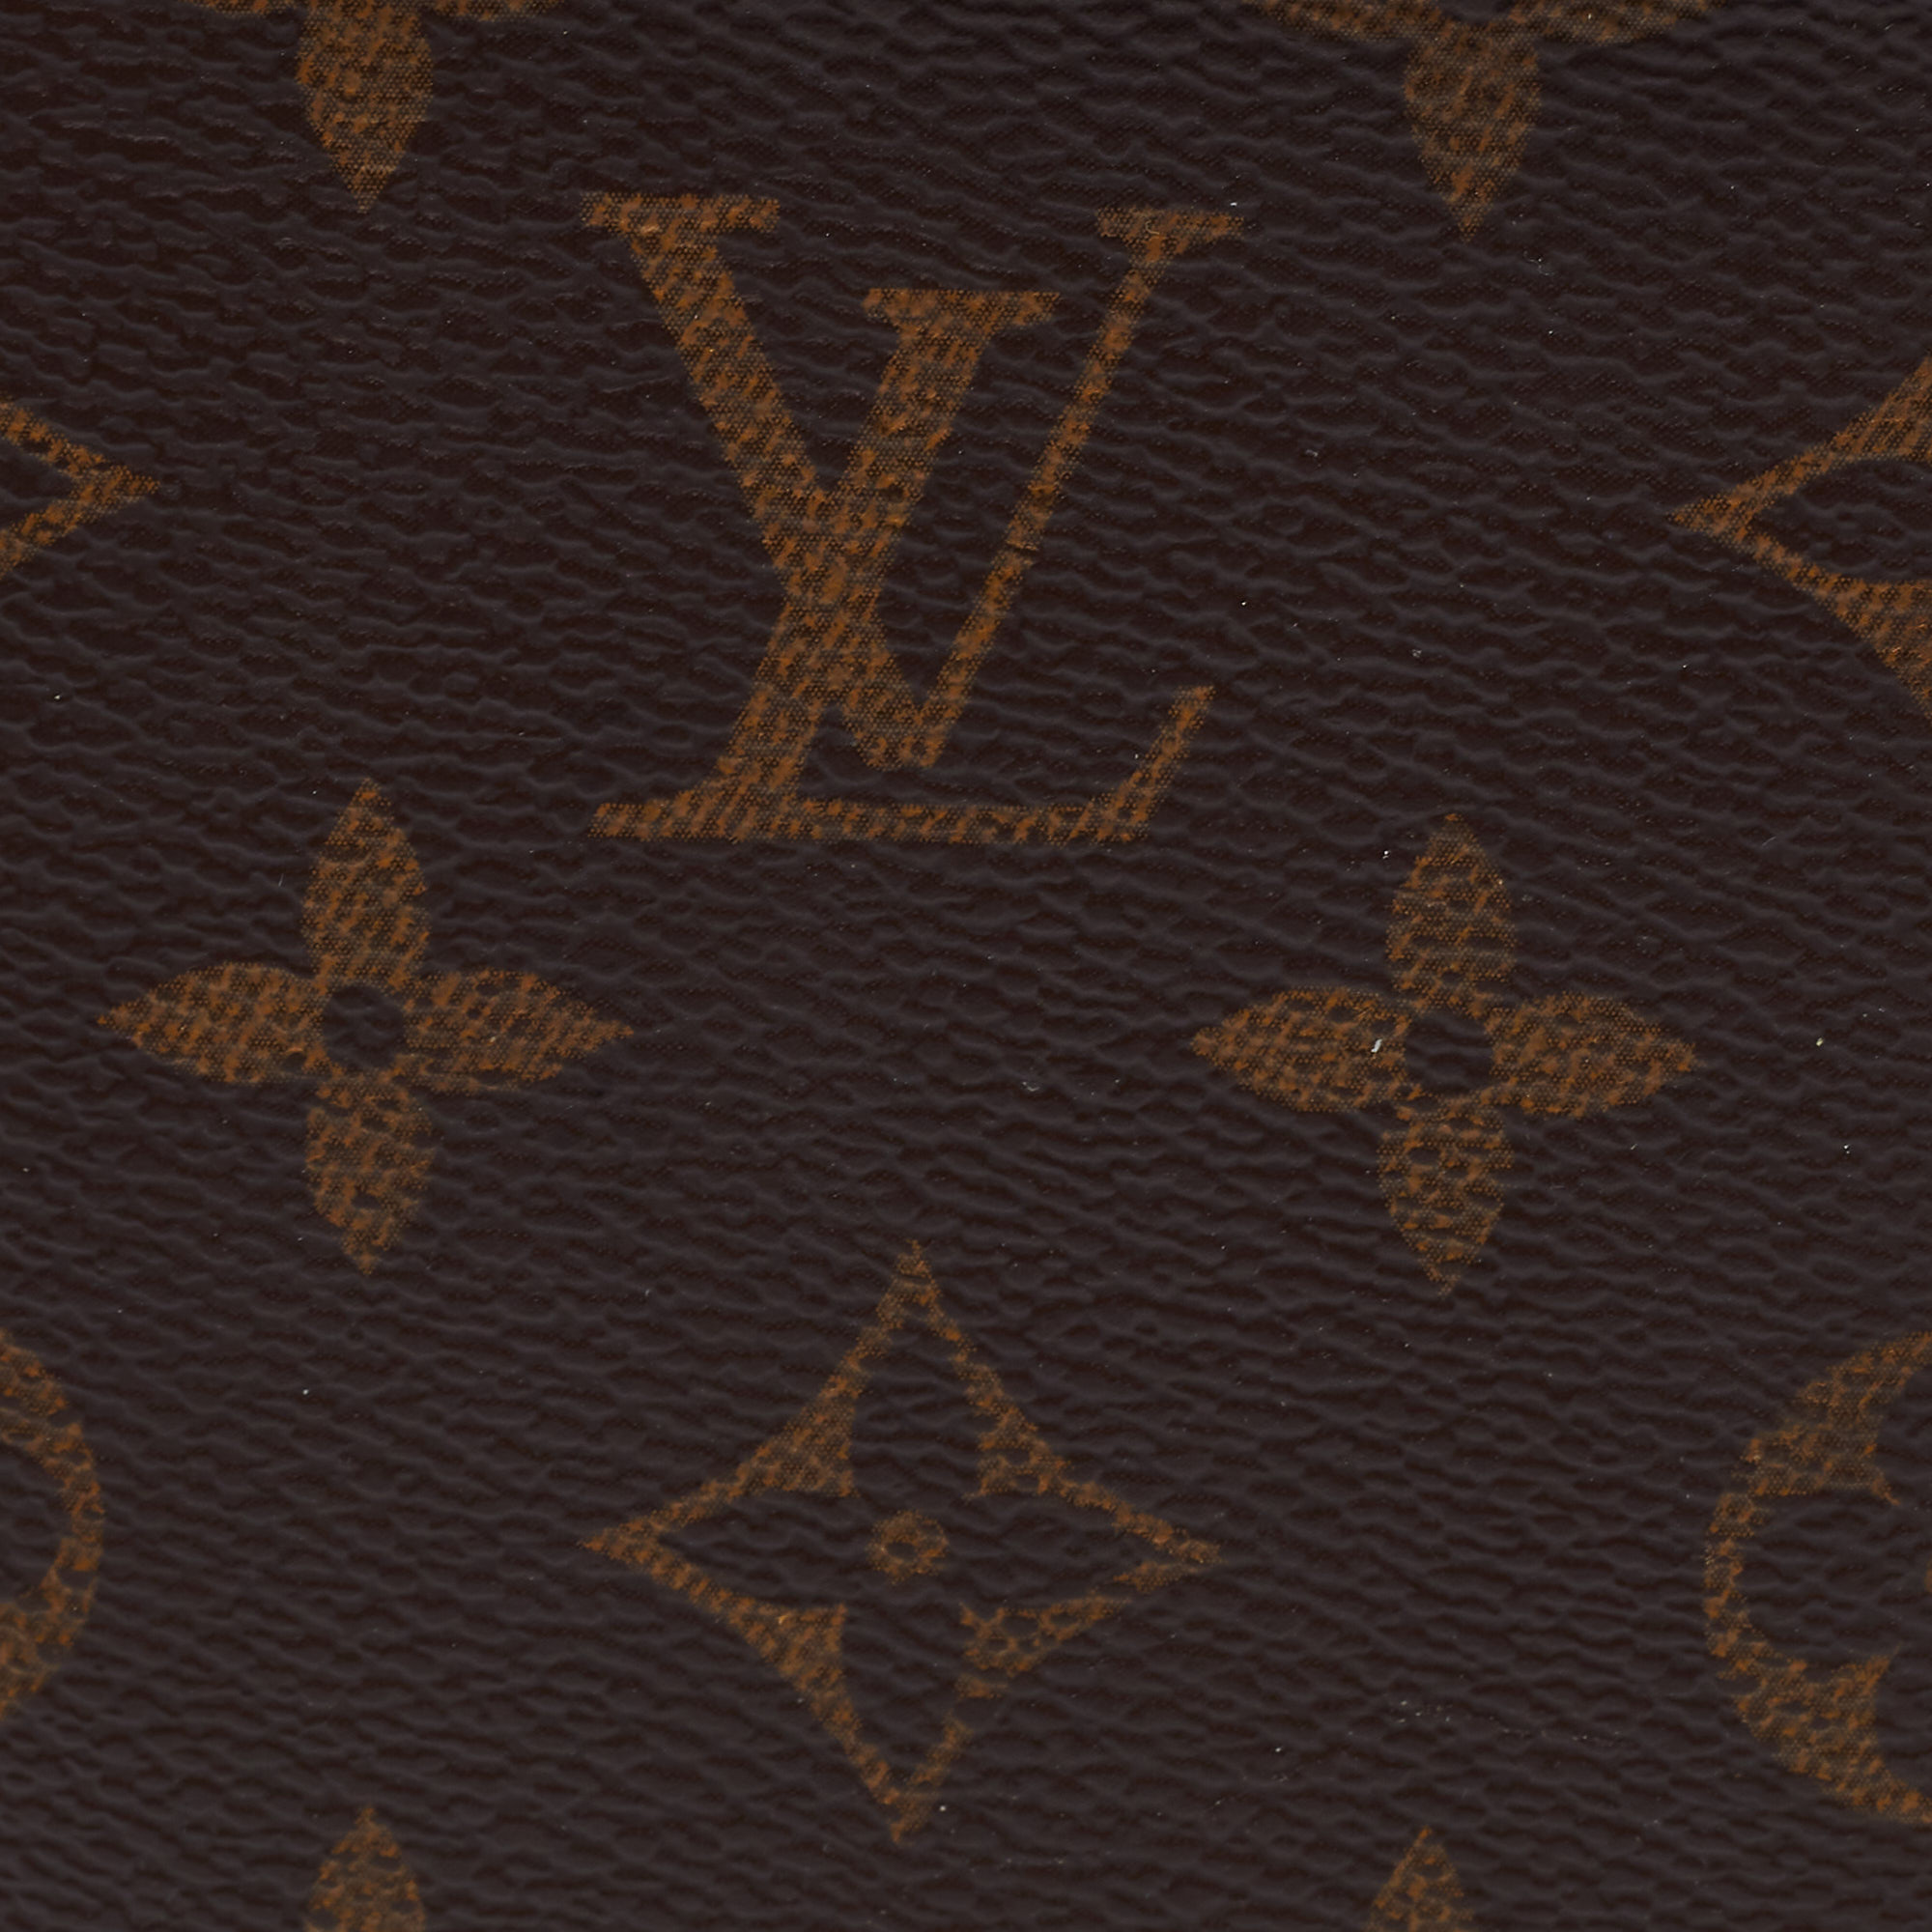 Buy Luxury Louis Vuitton Men's James Wallet in Monogram Canvas Online